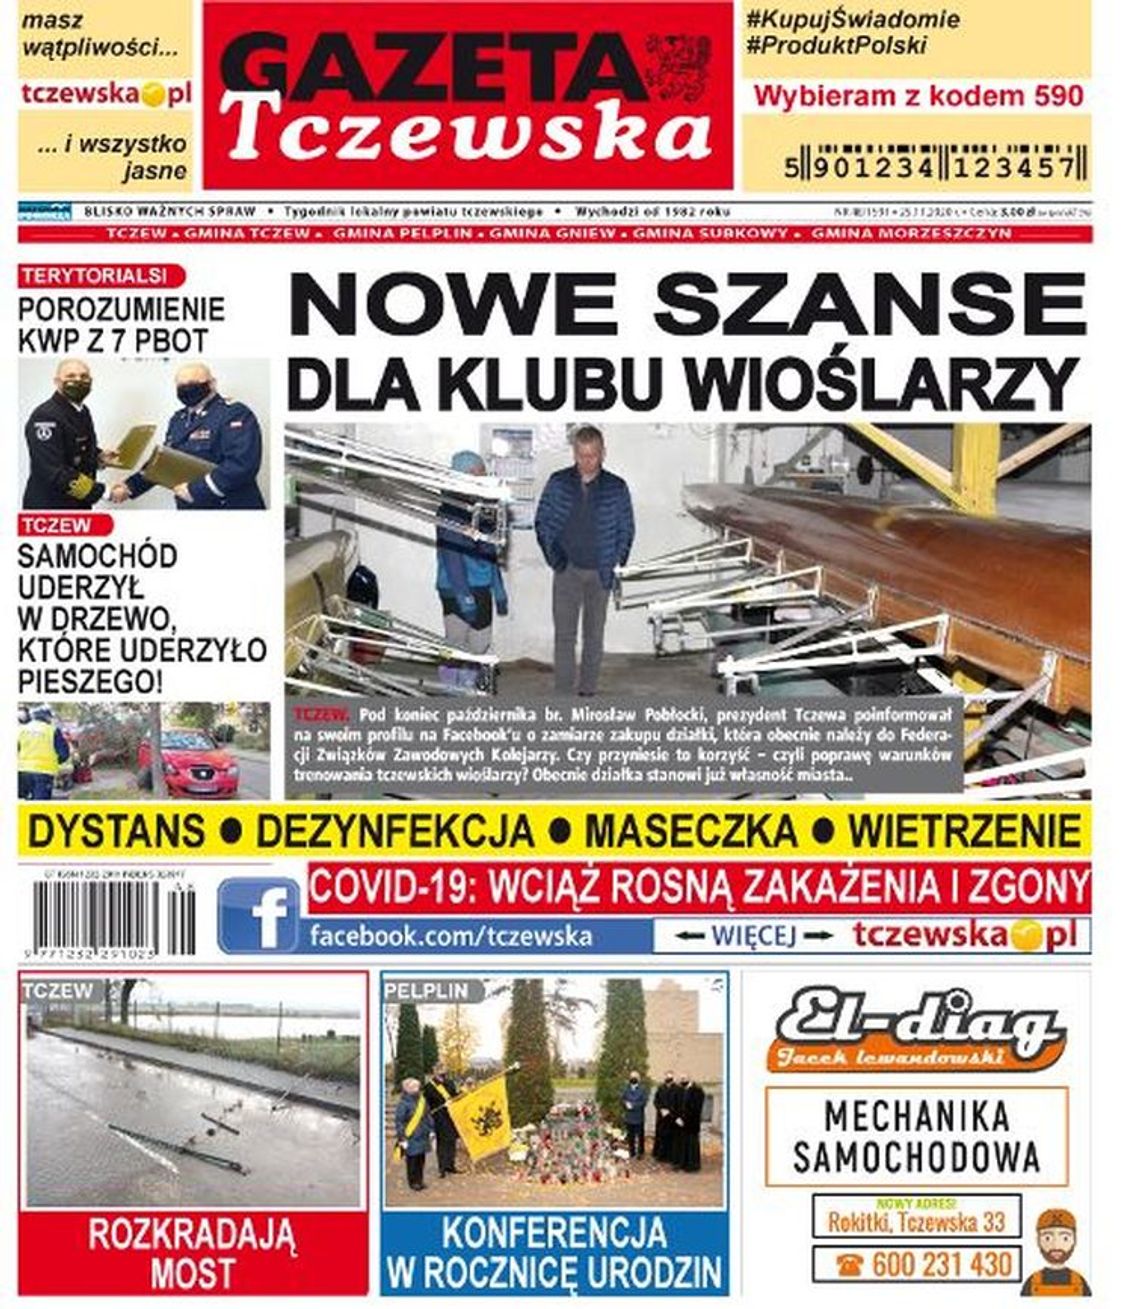 Nowy numer Gazety Tczewskiej już w sprzedaży. Najświeższe informacje z Tczewa i okolic naszego powiatu już w Twoim kiosku. Co w środku?